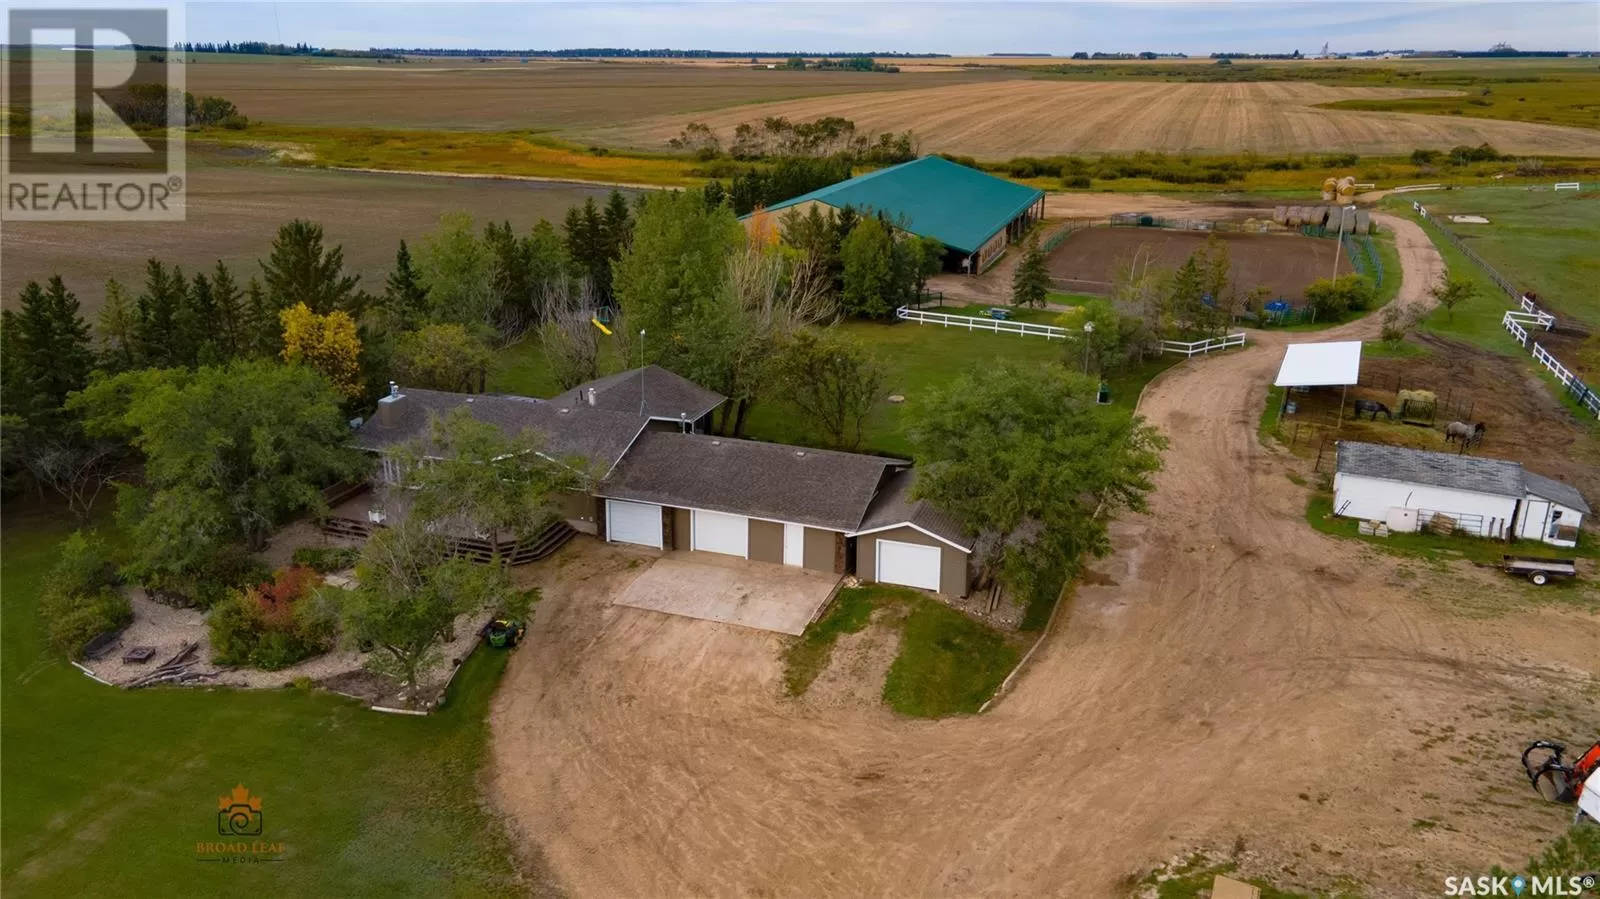 House for rent: Melfort Equestrian Acreage, Star City Rm No. 428, Saskatchewan S0E 1A0